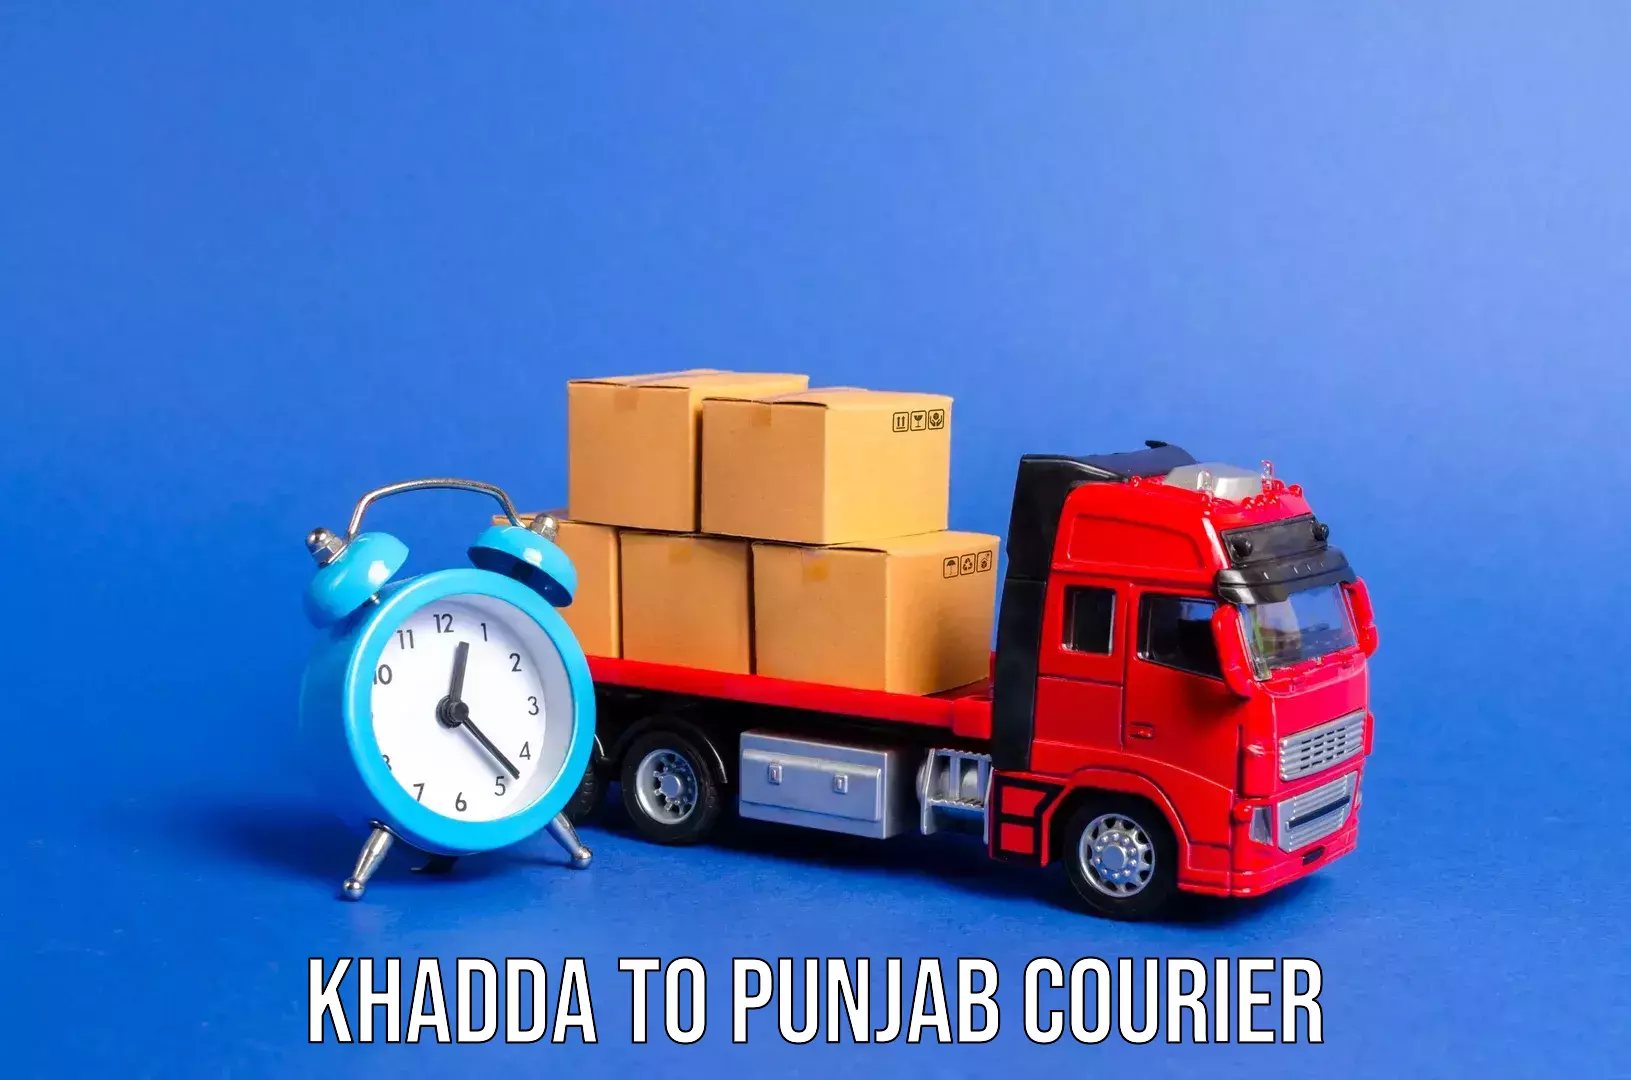 Luggage shipping estimate Khadda to Central University of Punjab Bathinda